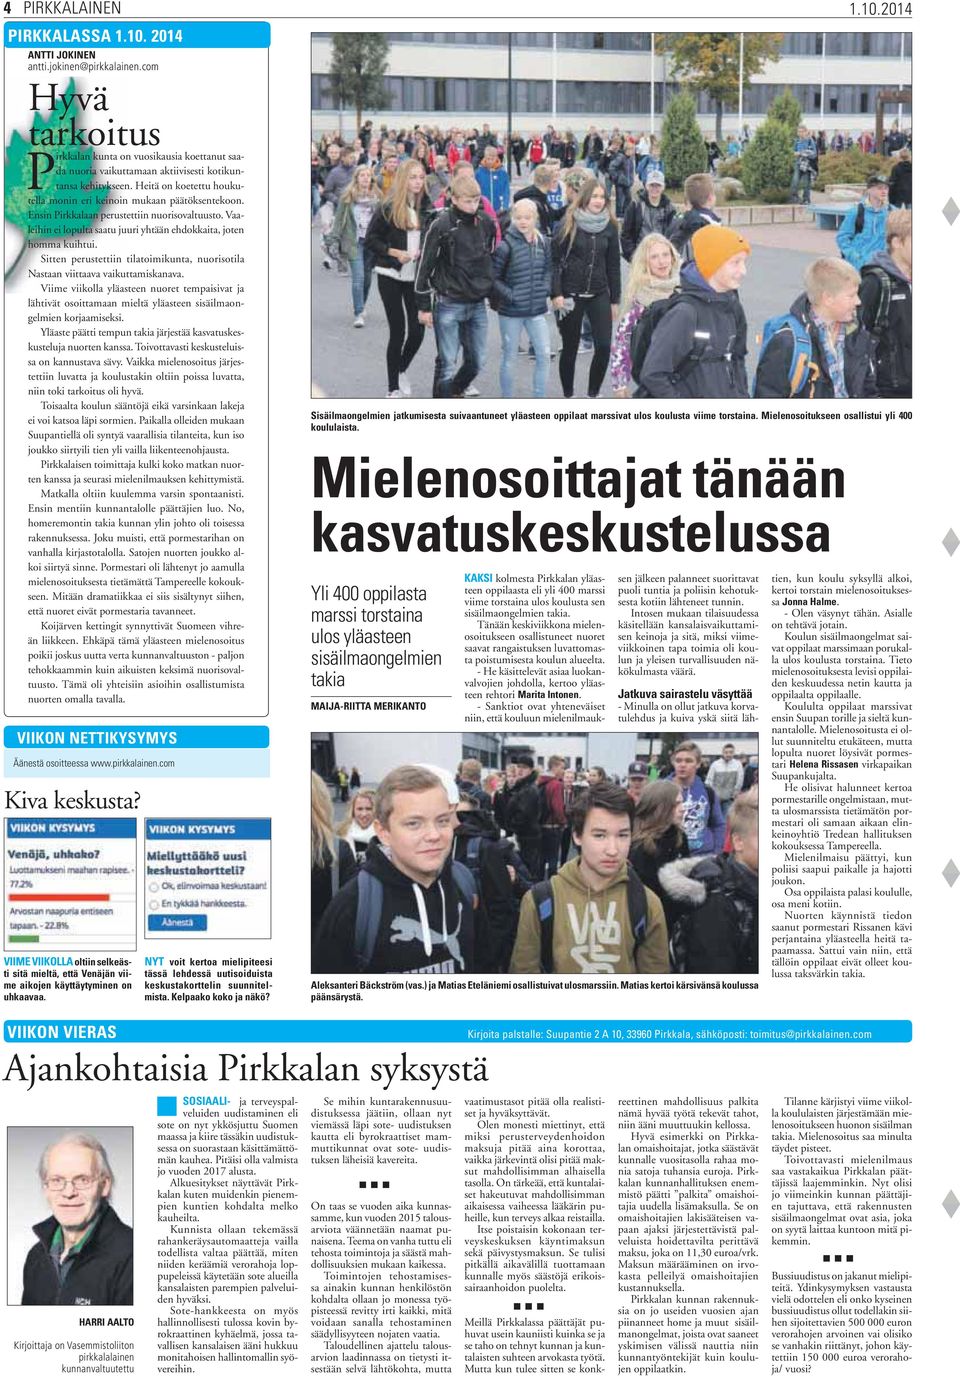 Ensin Pirkkalaan perustettiin nuorisovaltuusto. Vaaleihin ei lopulta saatu juuri yhtään ehdokkaita, joten homma kuihtui.